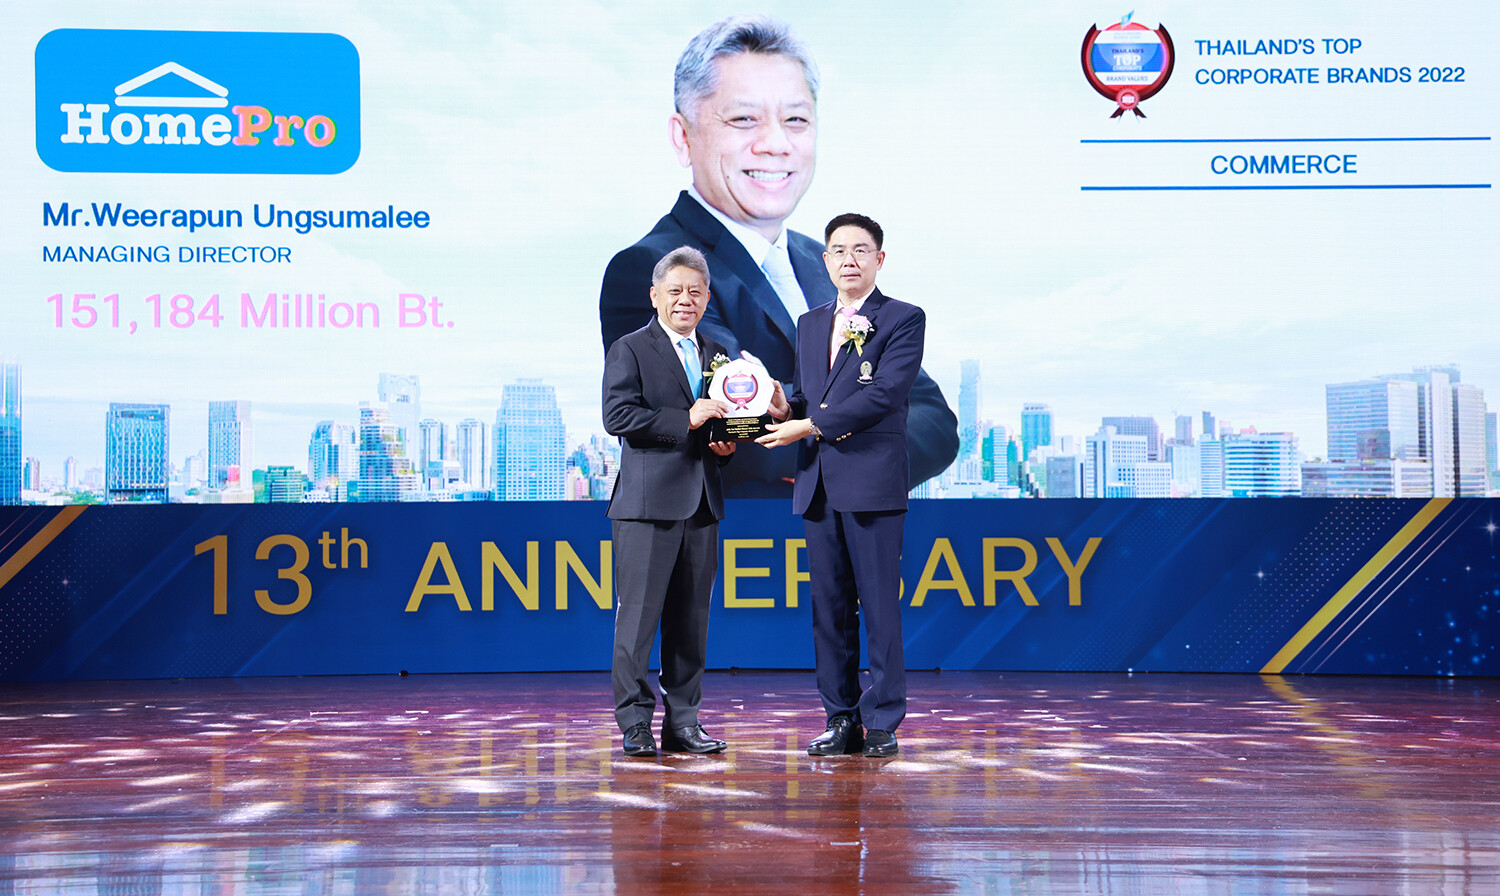 โฮมโปร คว้ารางวัล สุดยอดองค์กรมูลค่าแบรนด์สูงสุด "Thailand's Top Corporate Brands 2022"